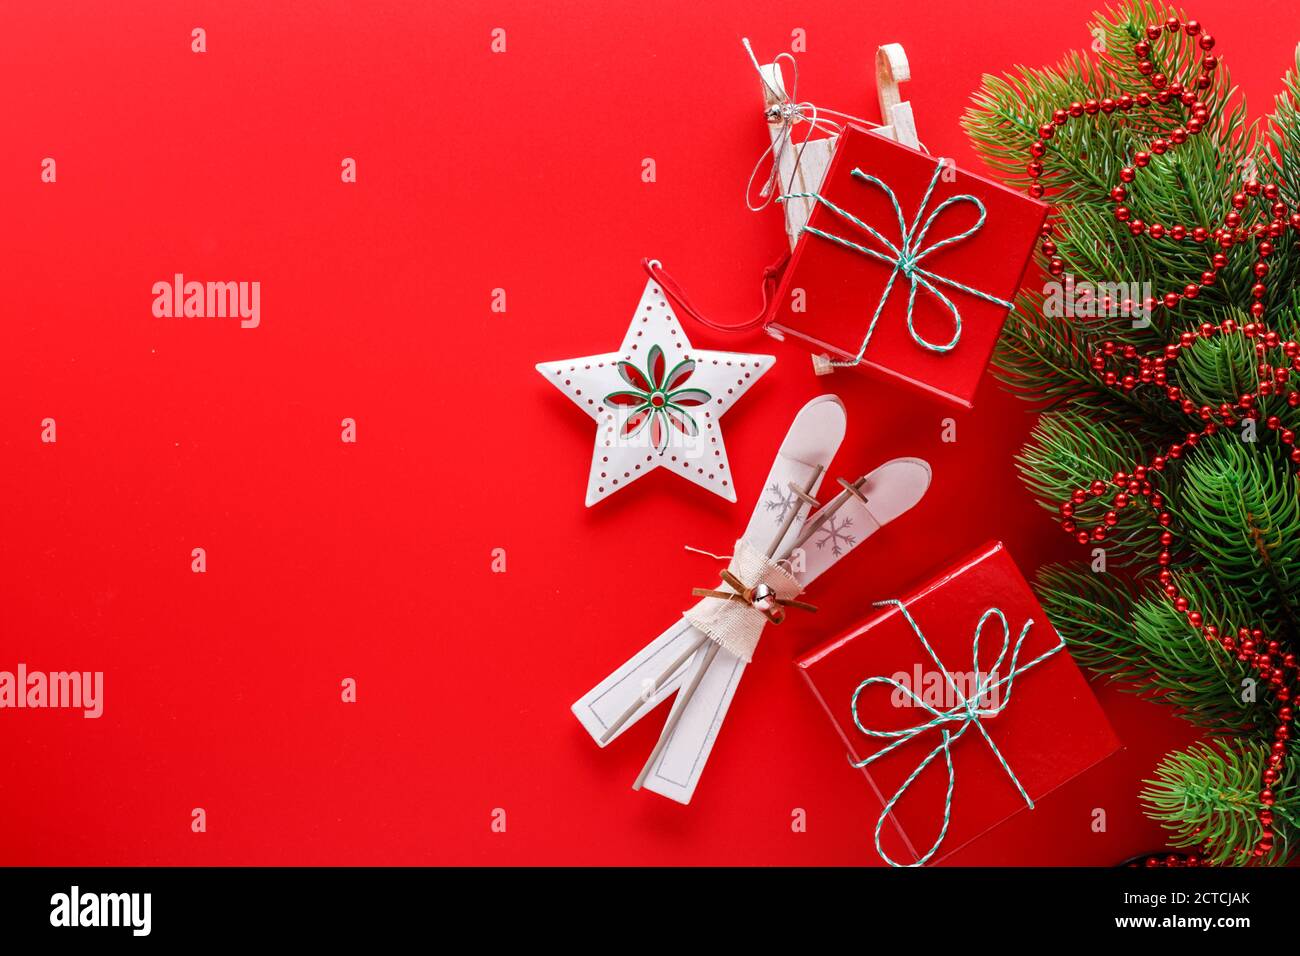 Draufsicht auf rotem Hintergrund mit Christbaumzweig, roten Geschenkschachteln, Sternornamenten und kleinen Holzskiern und Schlitten für die Weihnachtsfeiertage Stockfoto